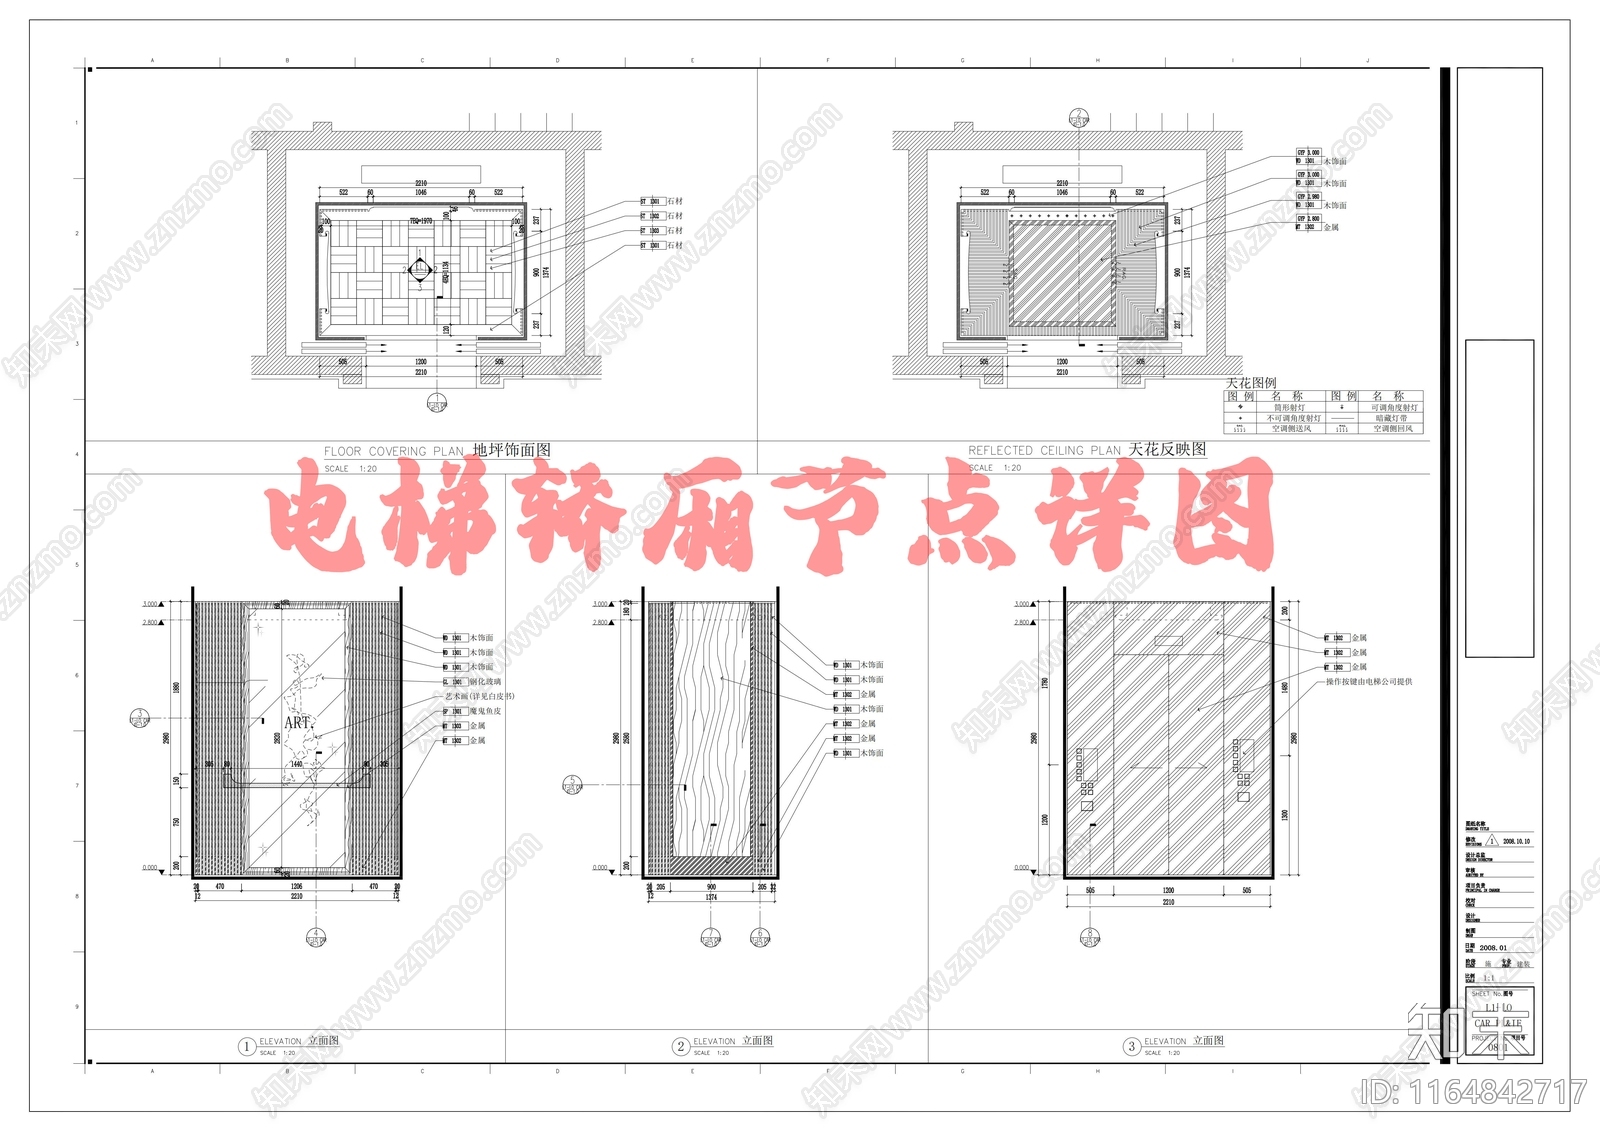 新中式其他室内工艺节点施工图下载【ID:1164842717】